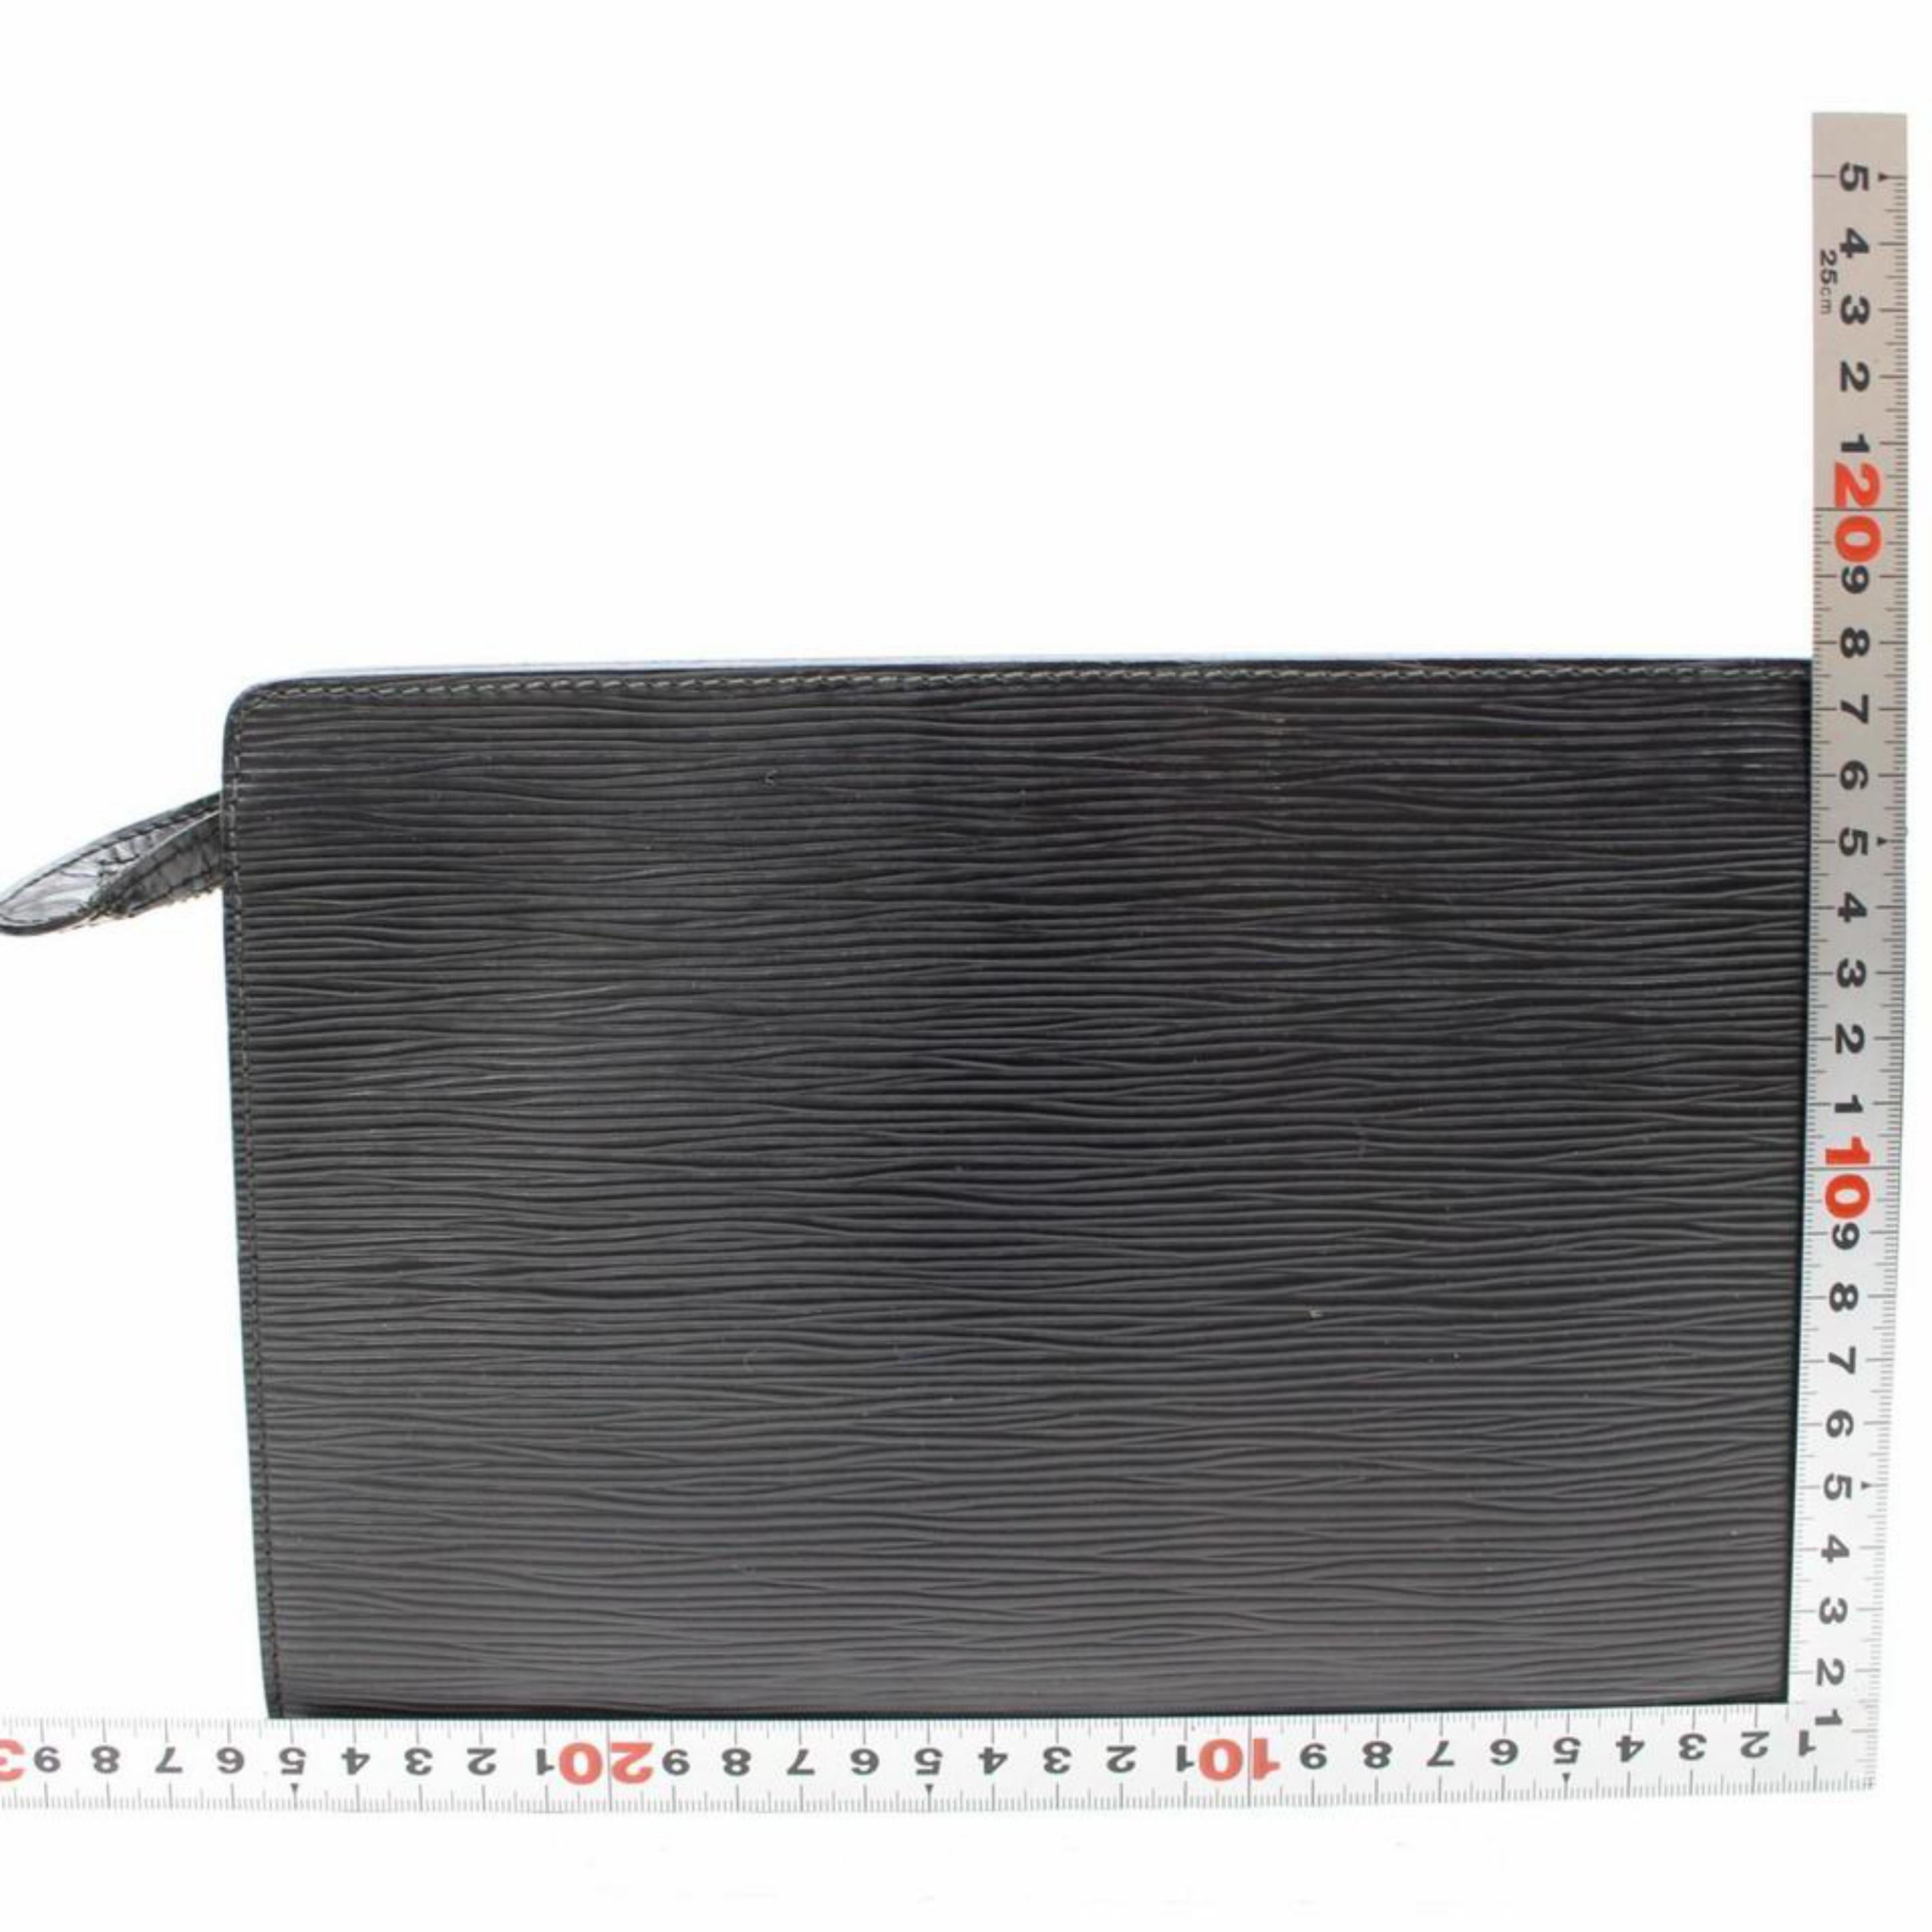 Louis Vuitton Pochette Noir Epi Homme 865790 Black Leather Clutch For Sale 3